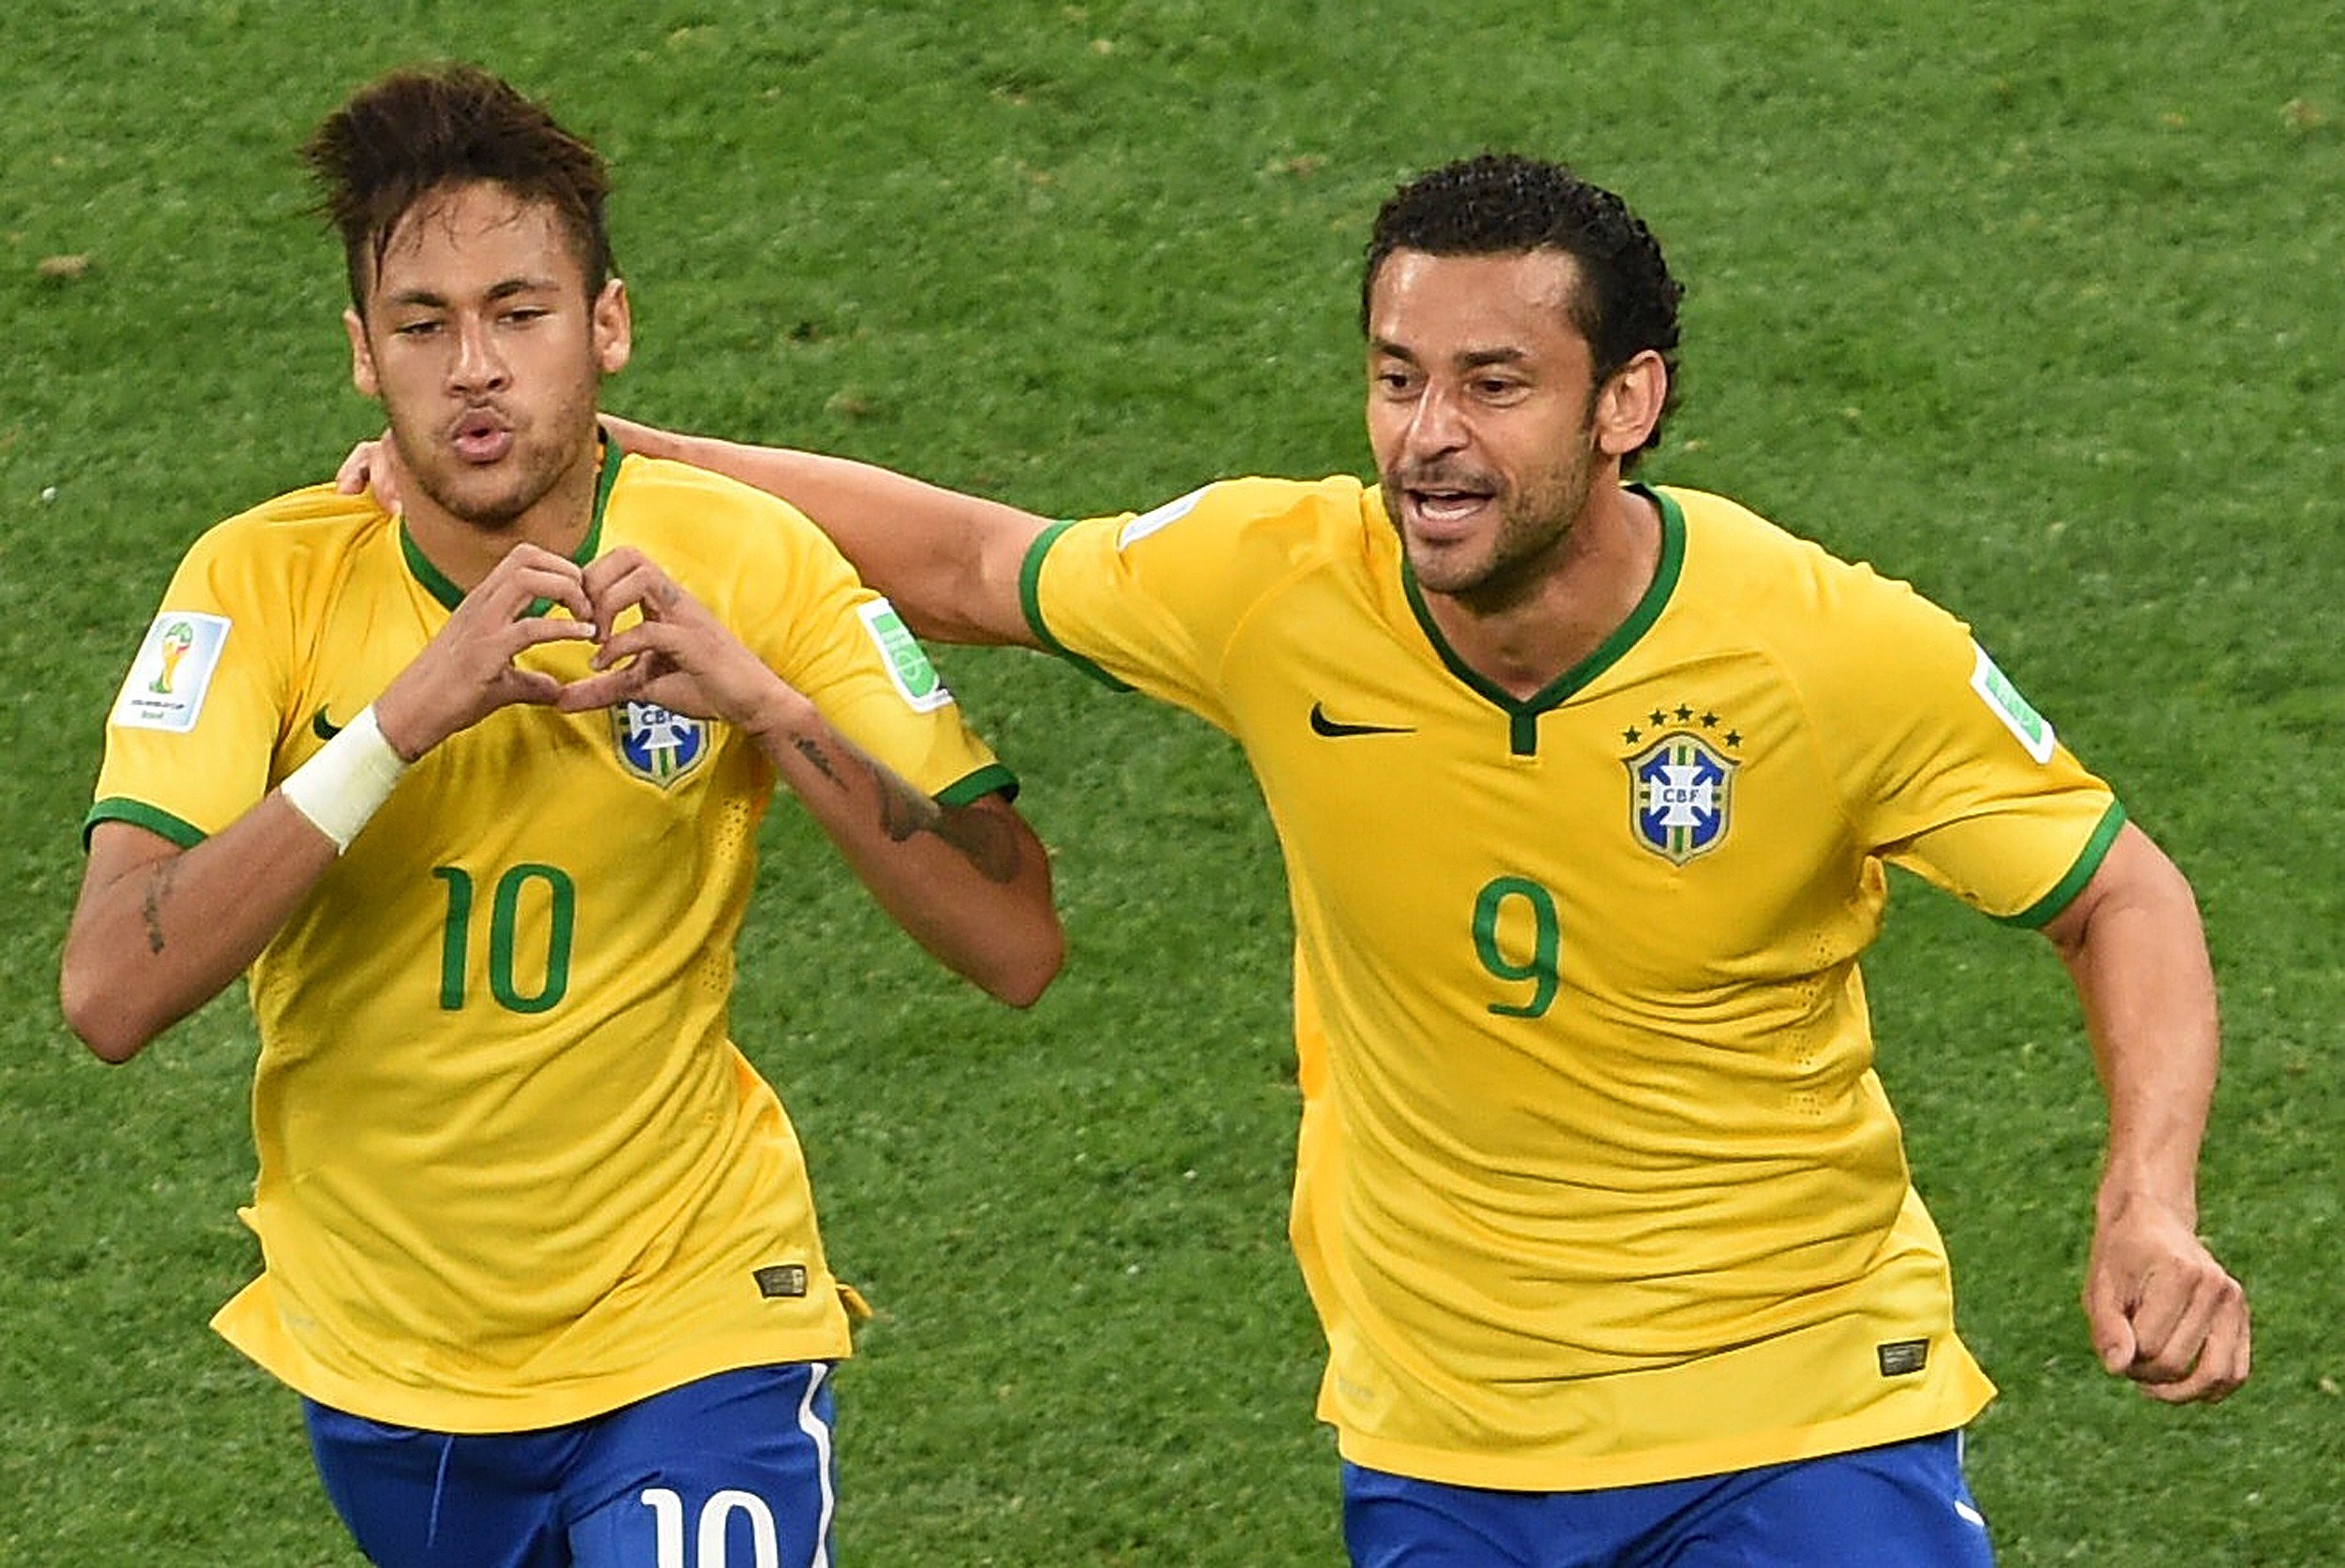 Fred spielte zusammen mit Neymar bei der Weltmeisterschaft 2014